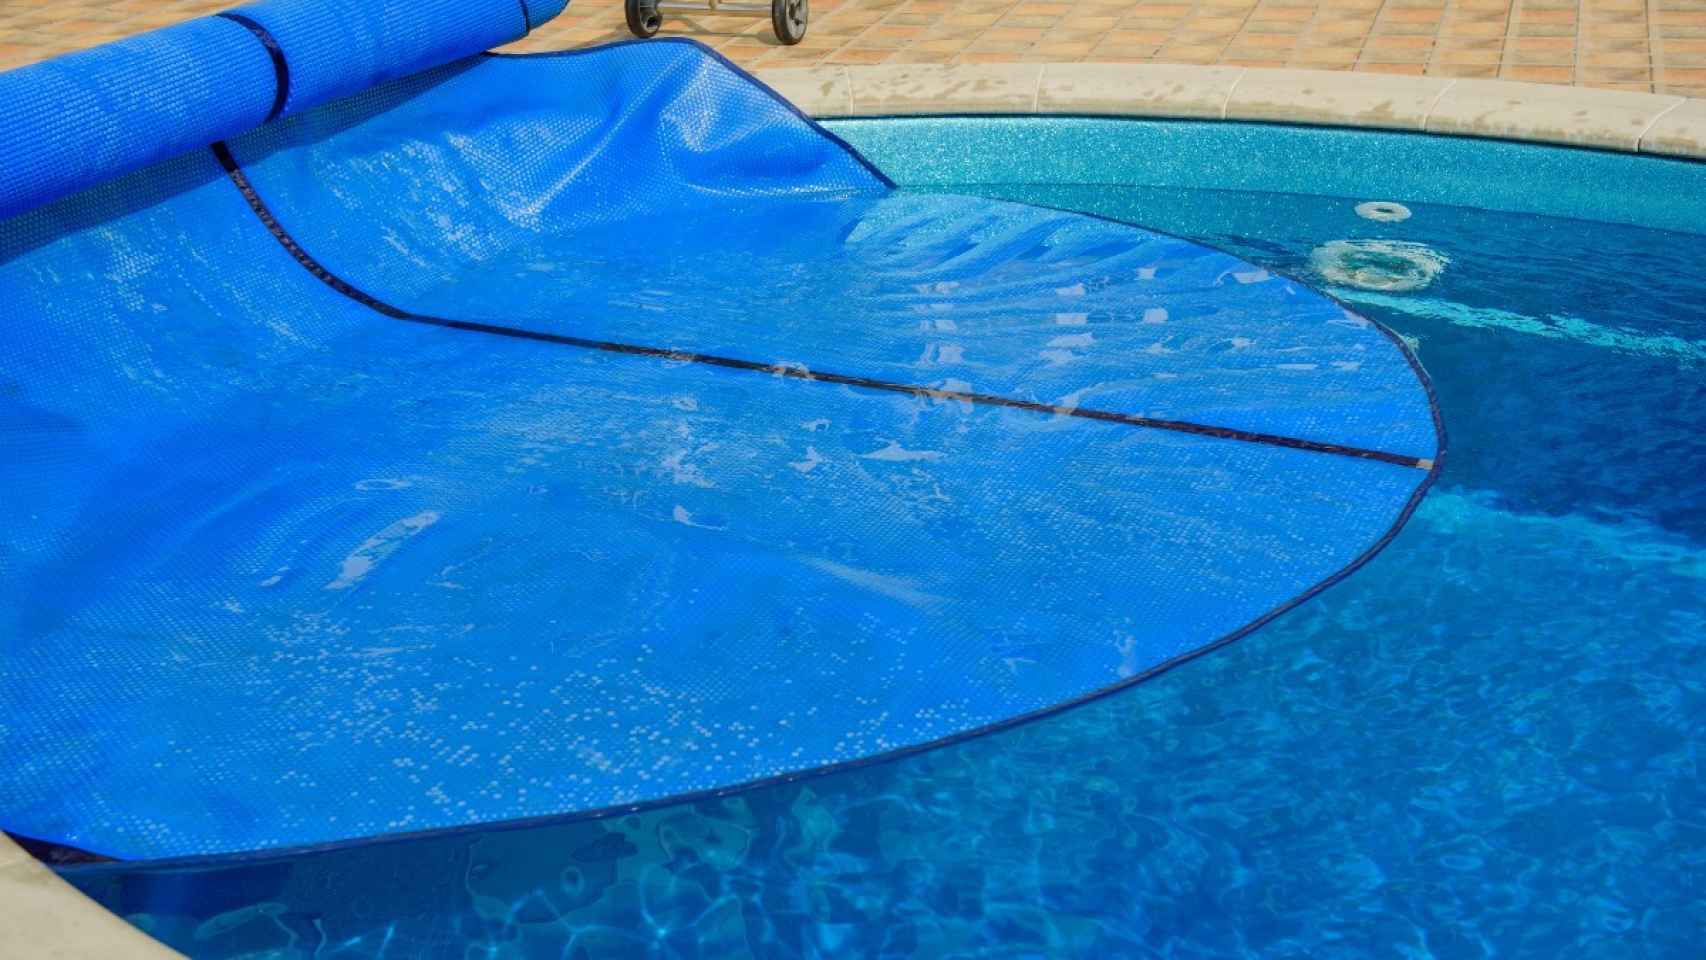 Protege tu piscina cómodamente con este enrollador de cubiertas ¡Ahora con un 20% de descuento!